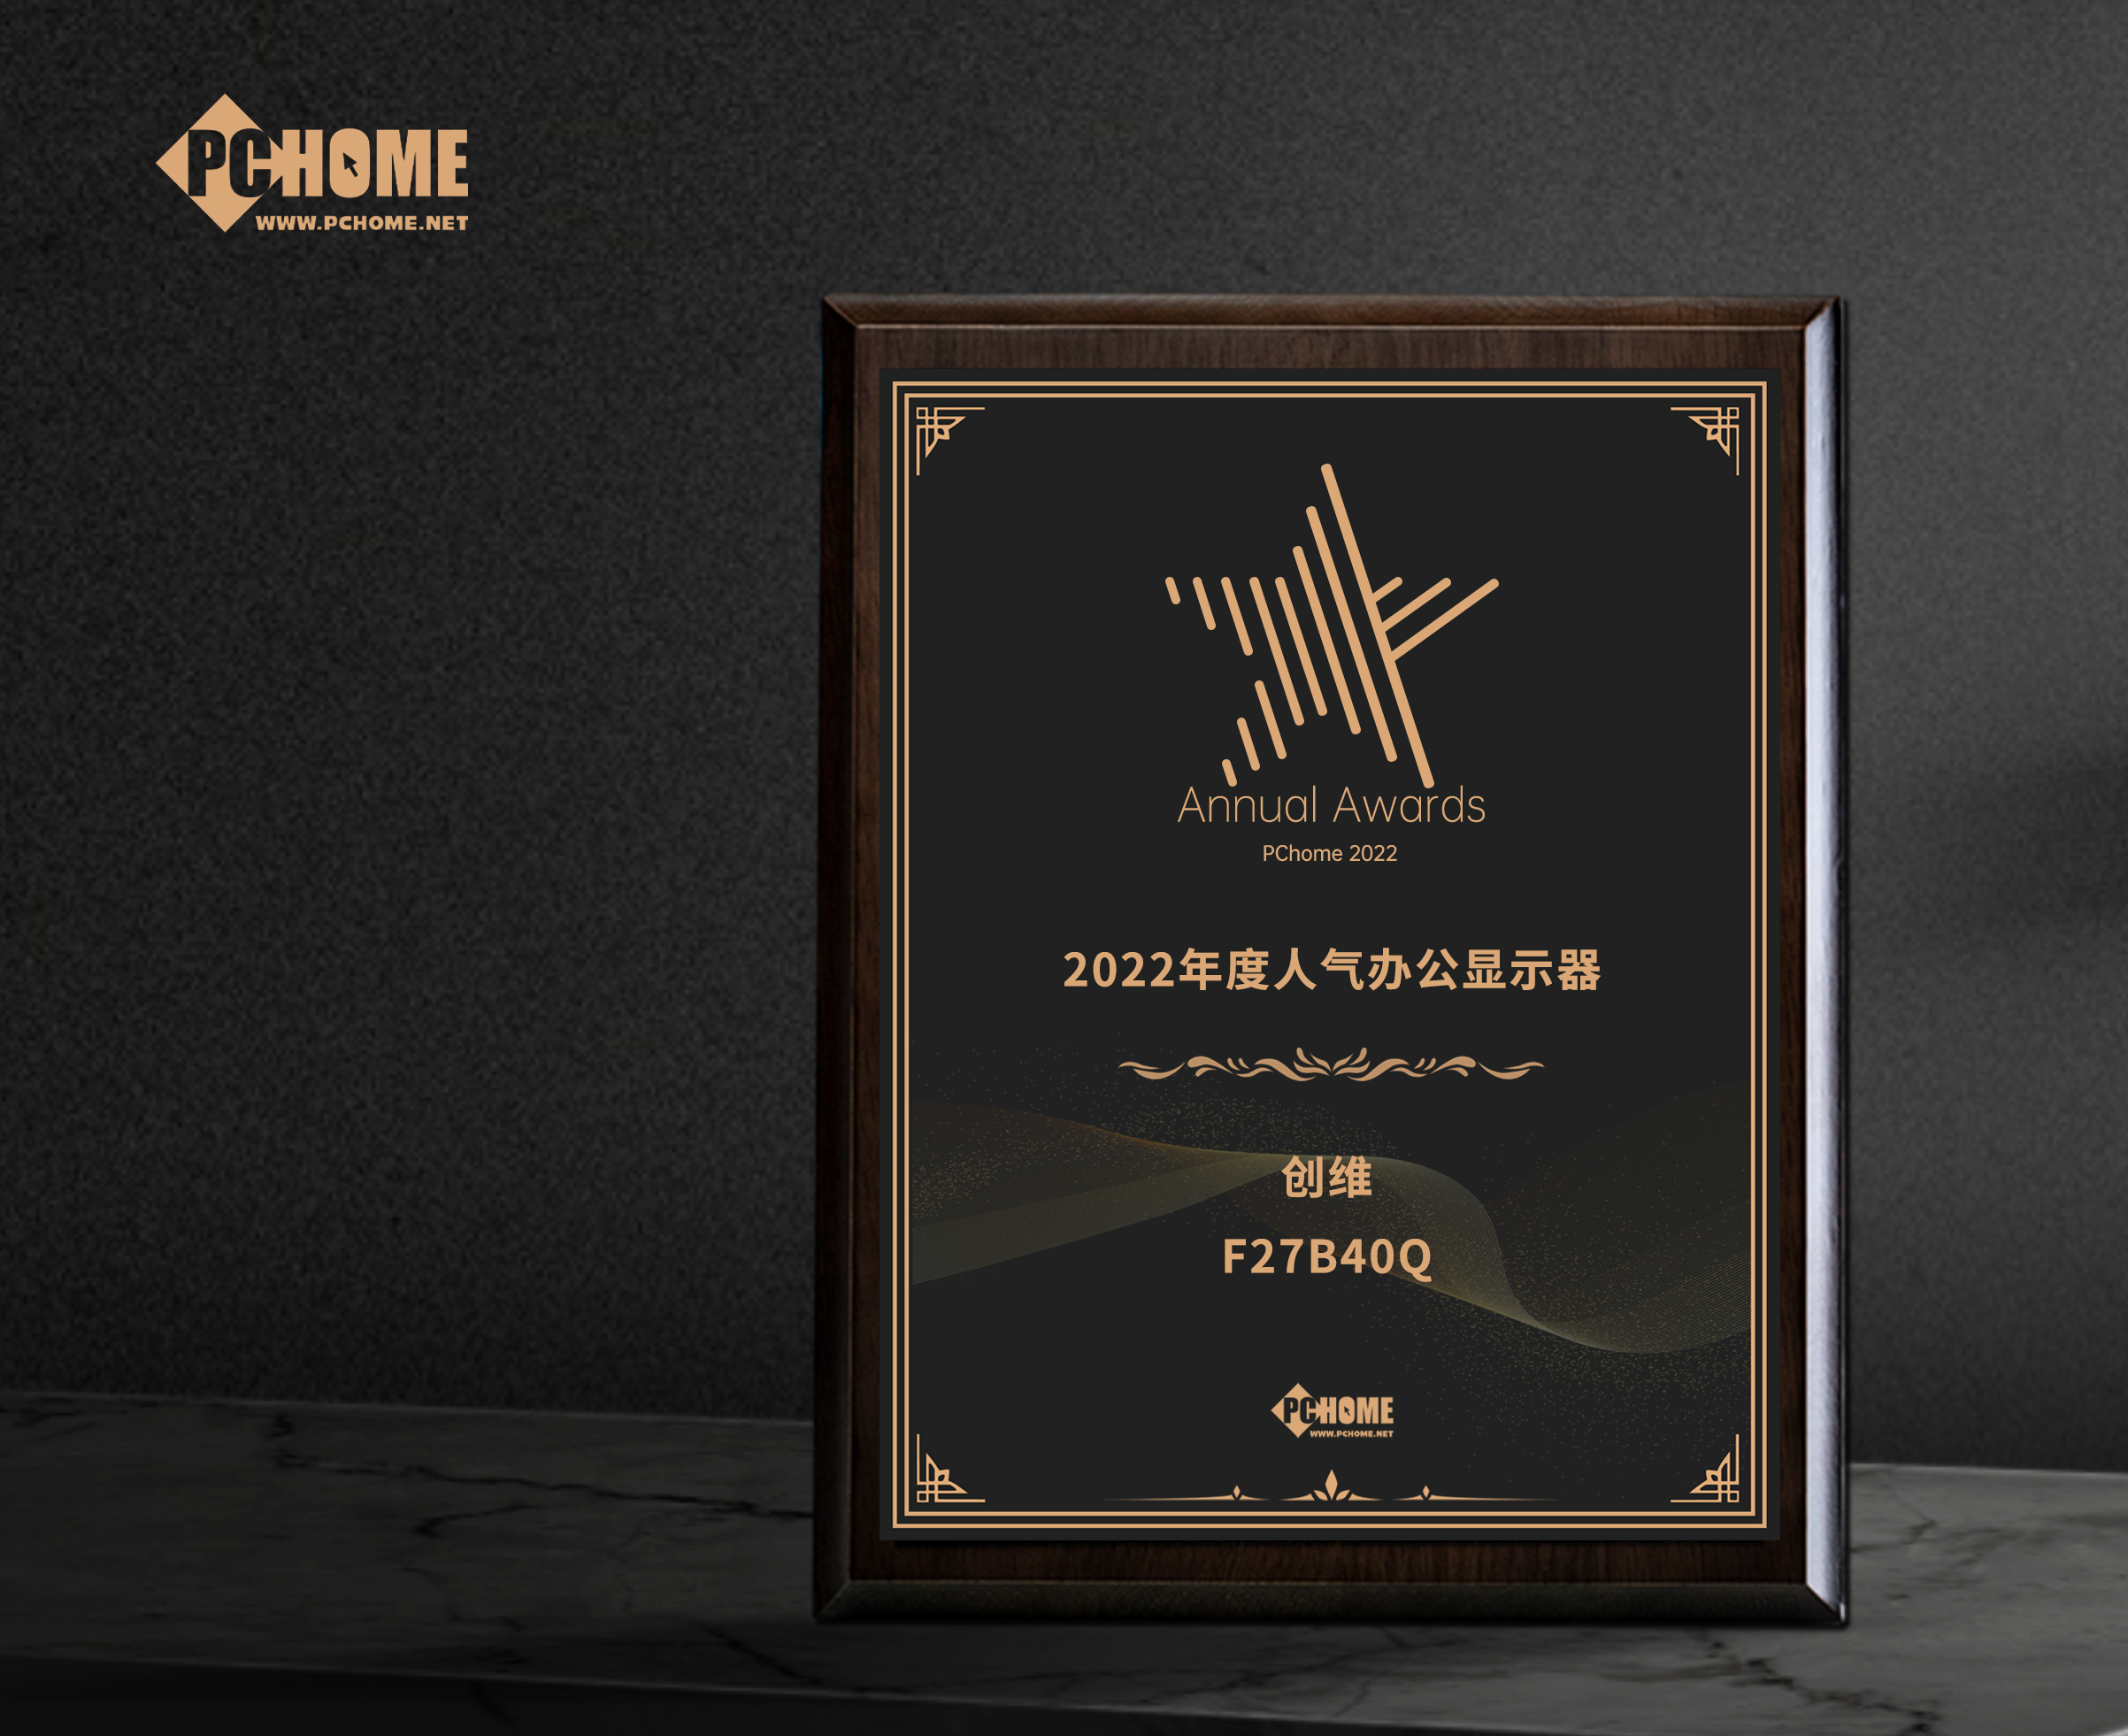 漢川市創維F27B40Q獲得PChome2022年度人氣辦公顯示器獎項